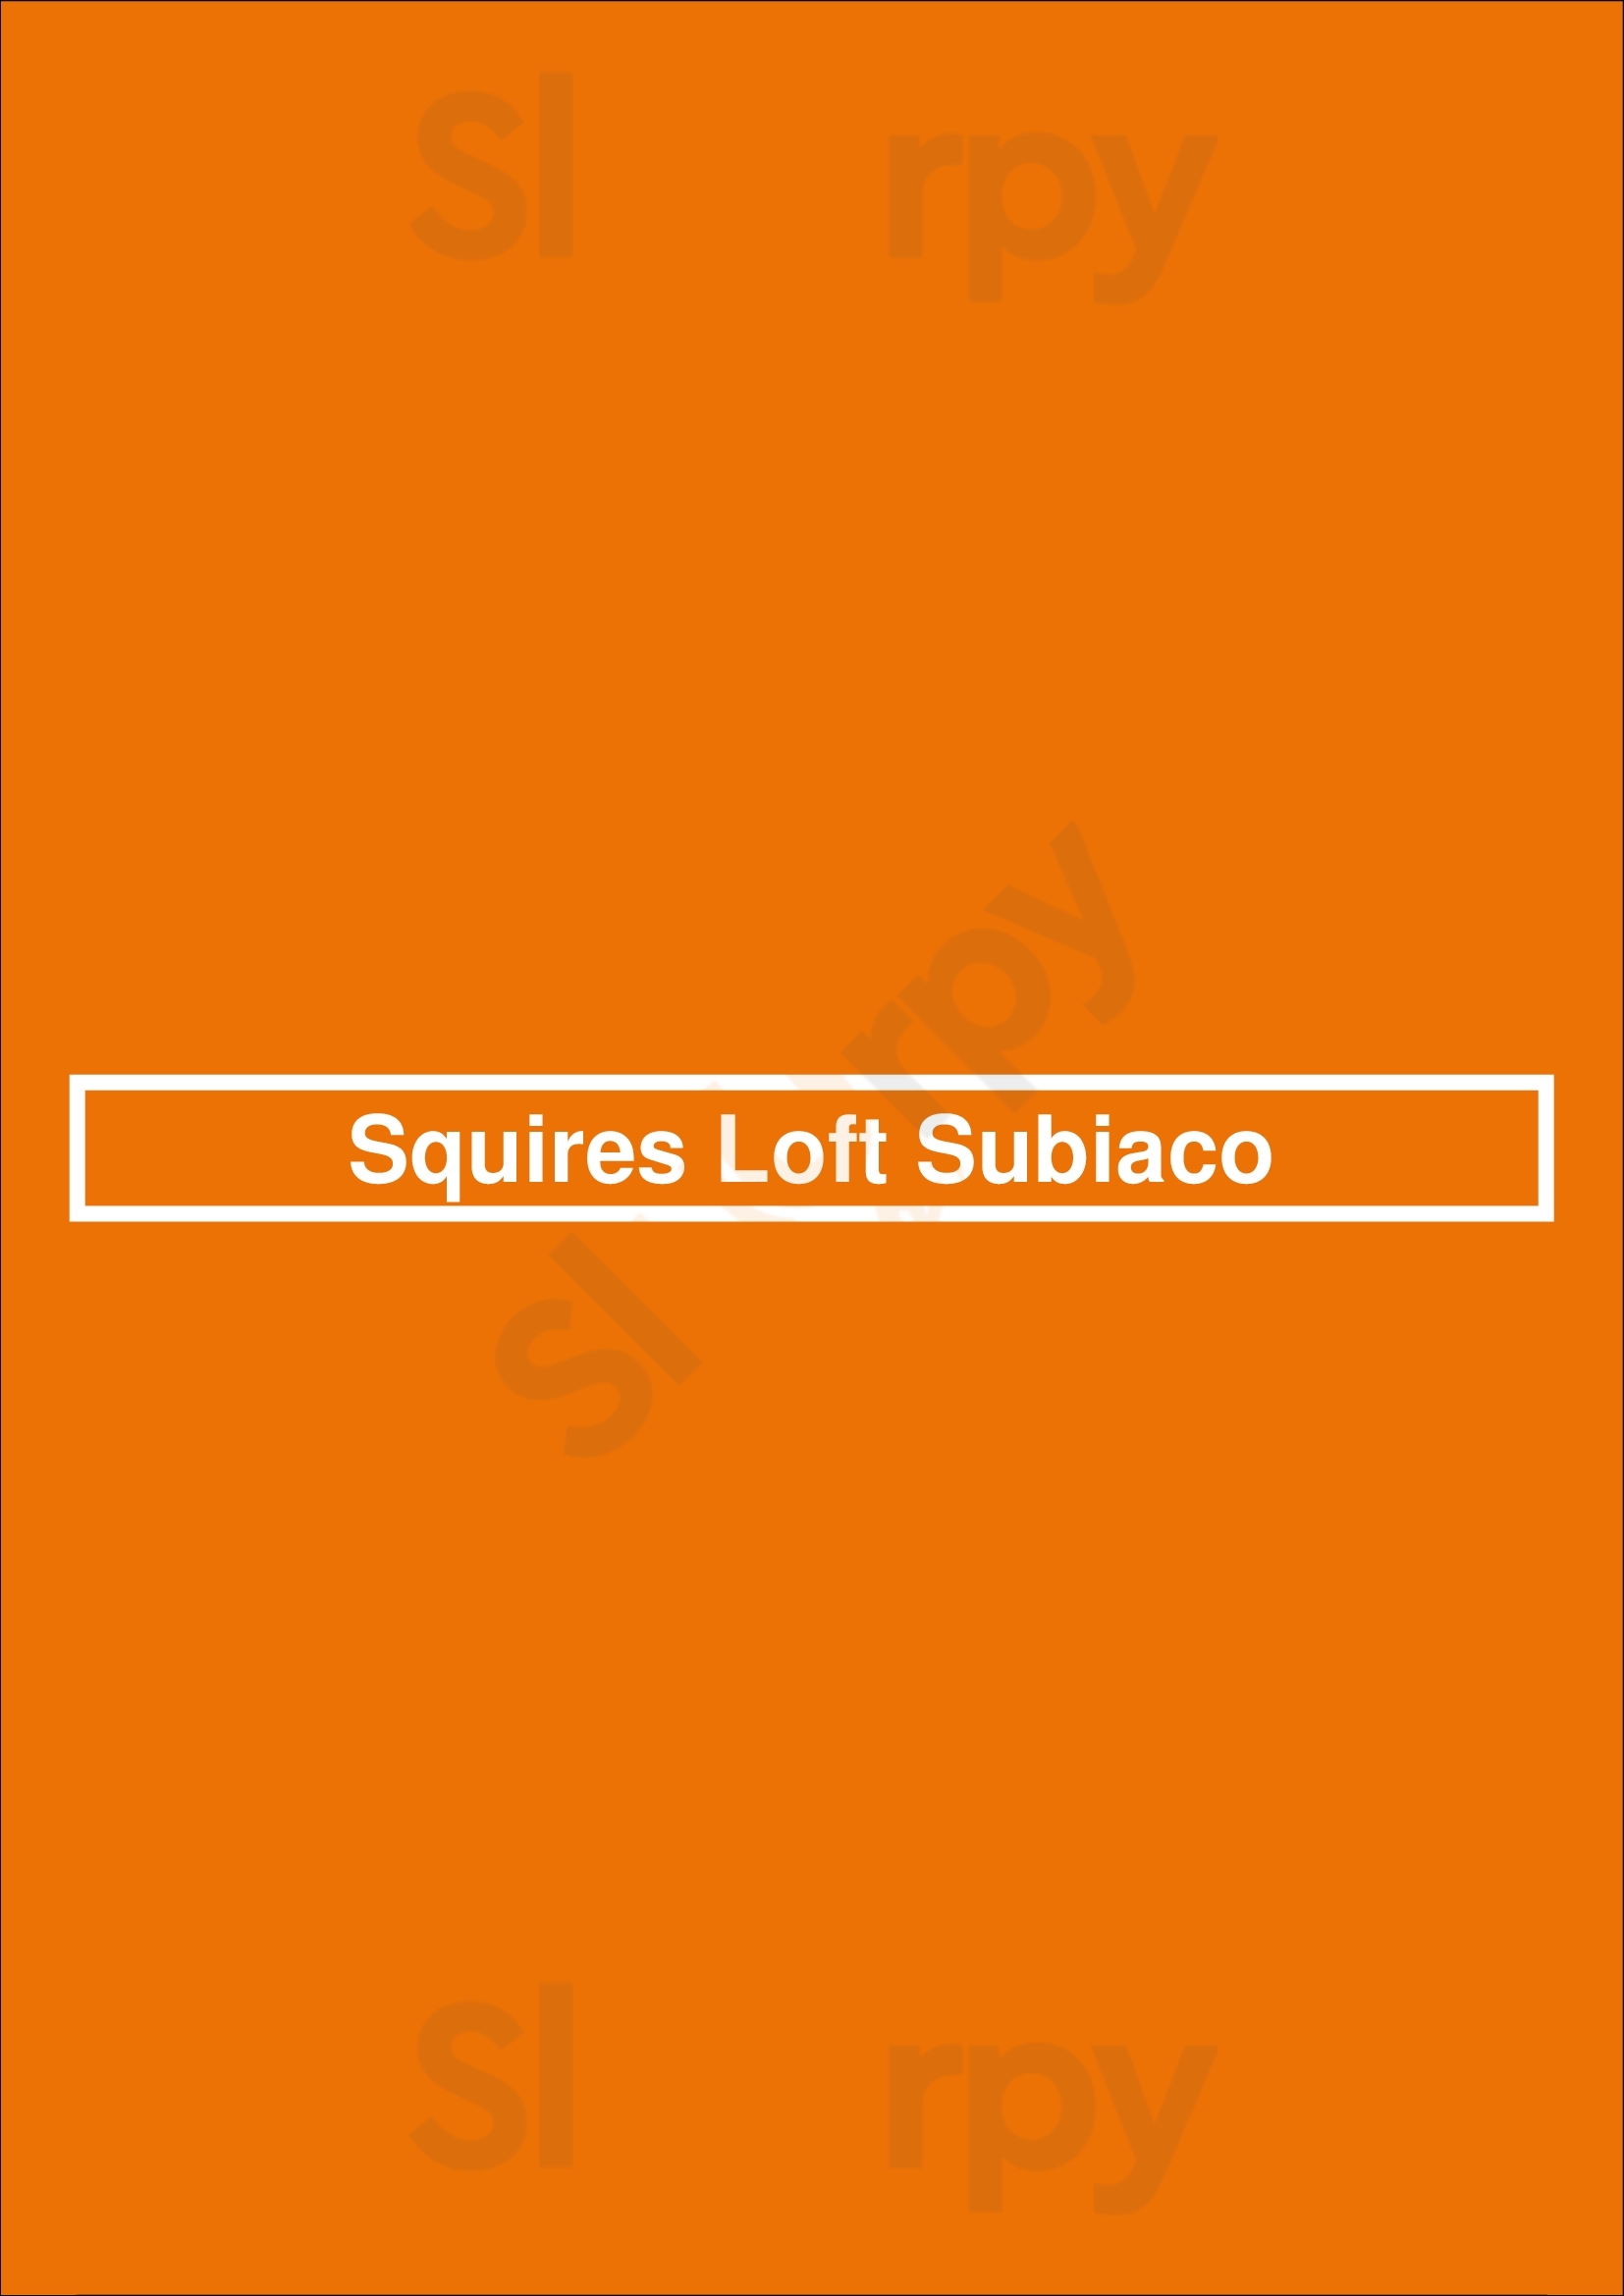 Squires Loft Subiaco Subiaco Menu - 1